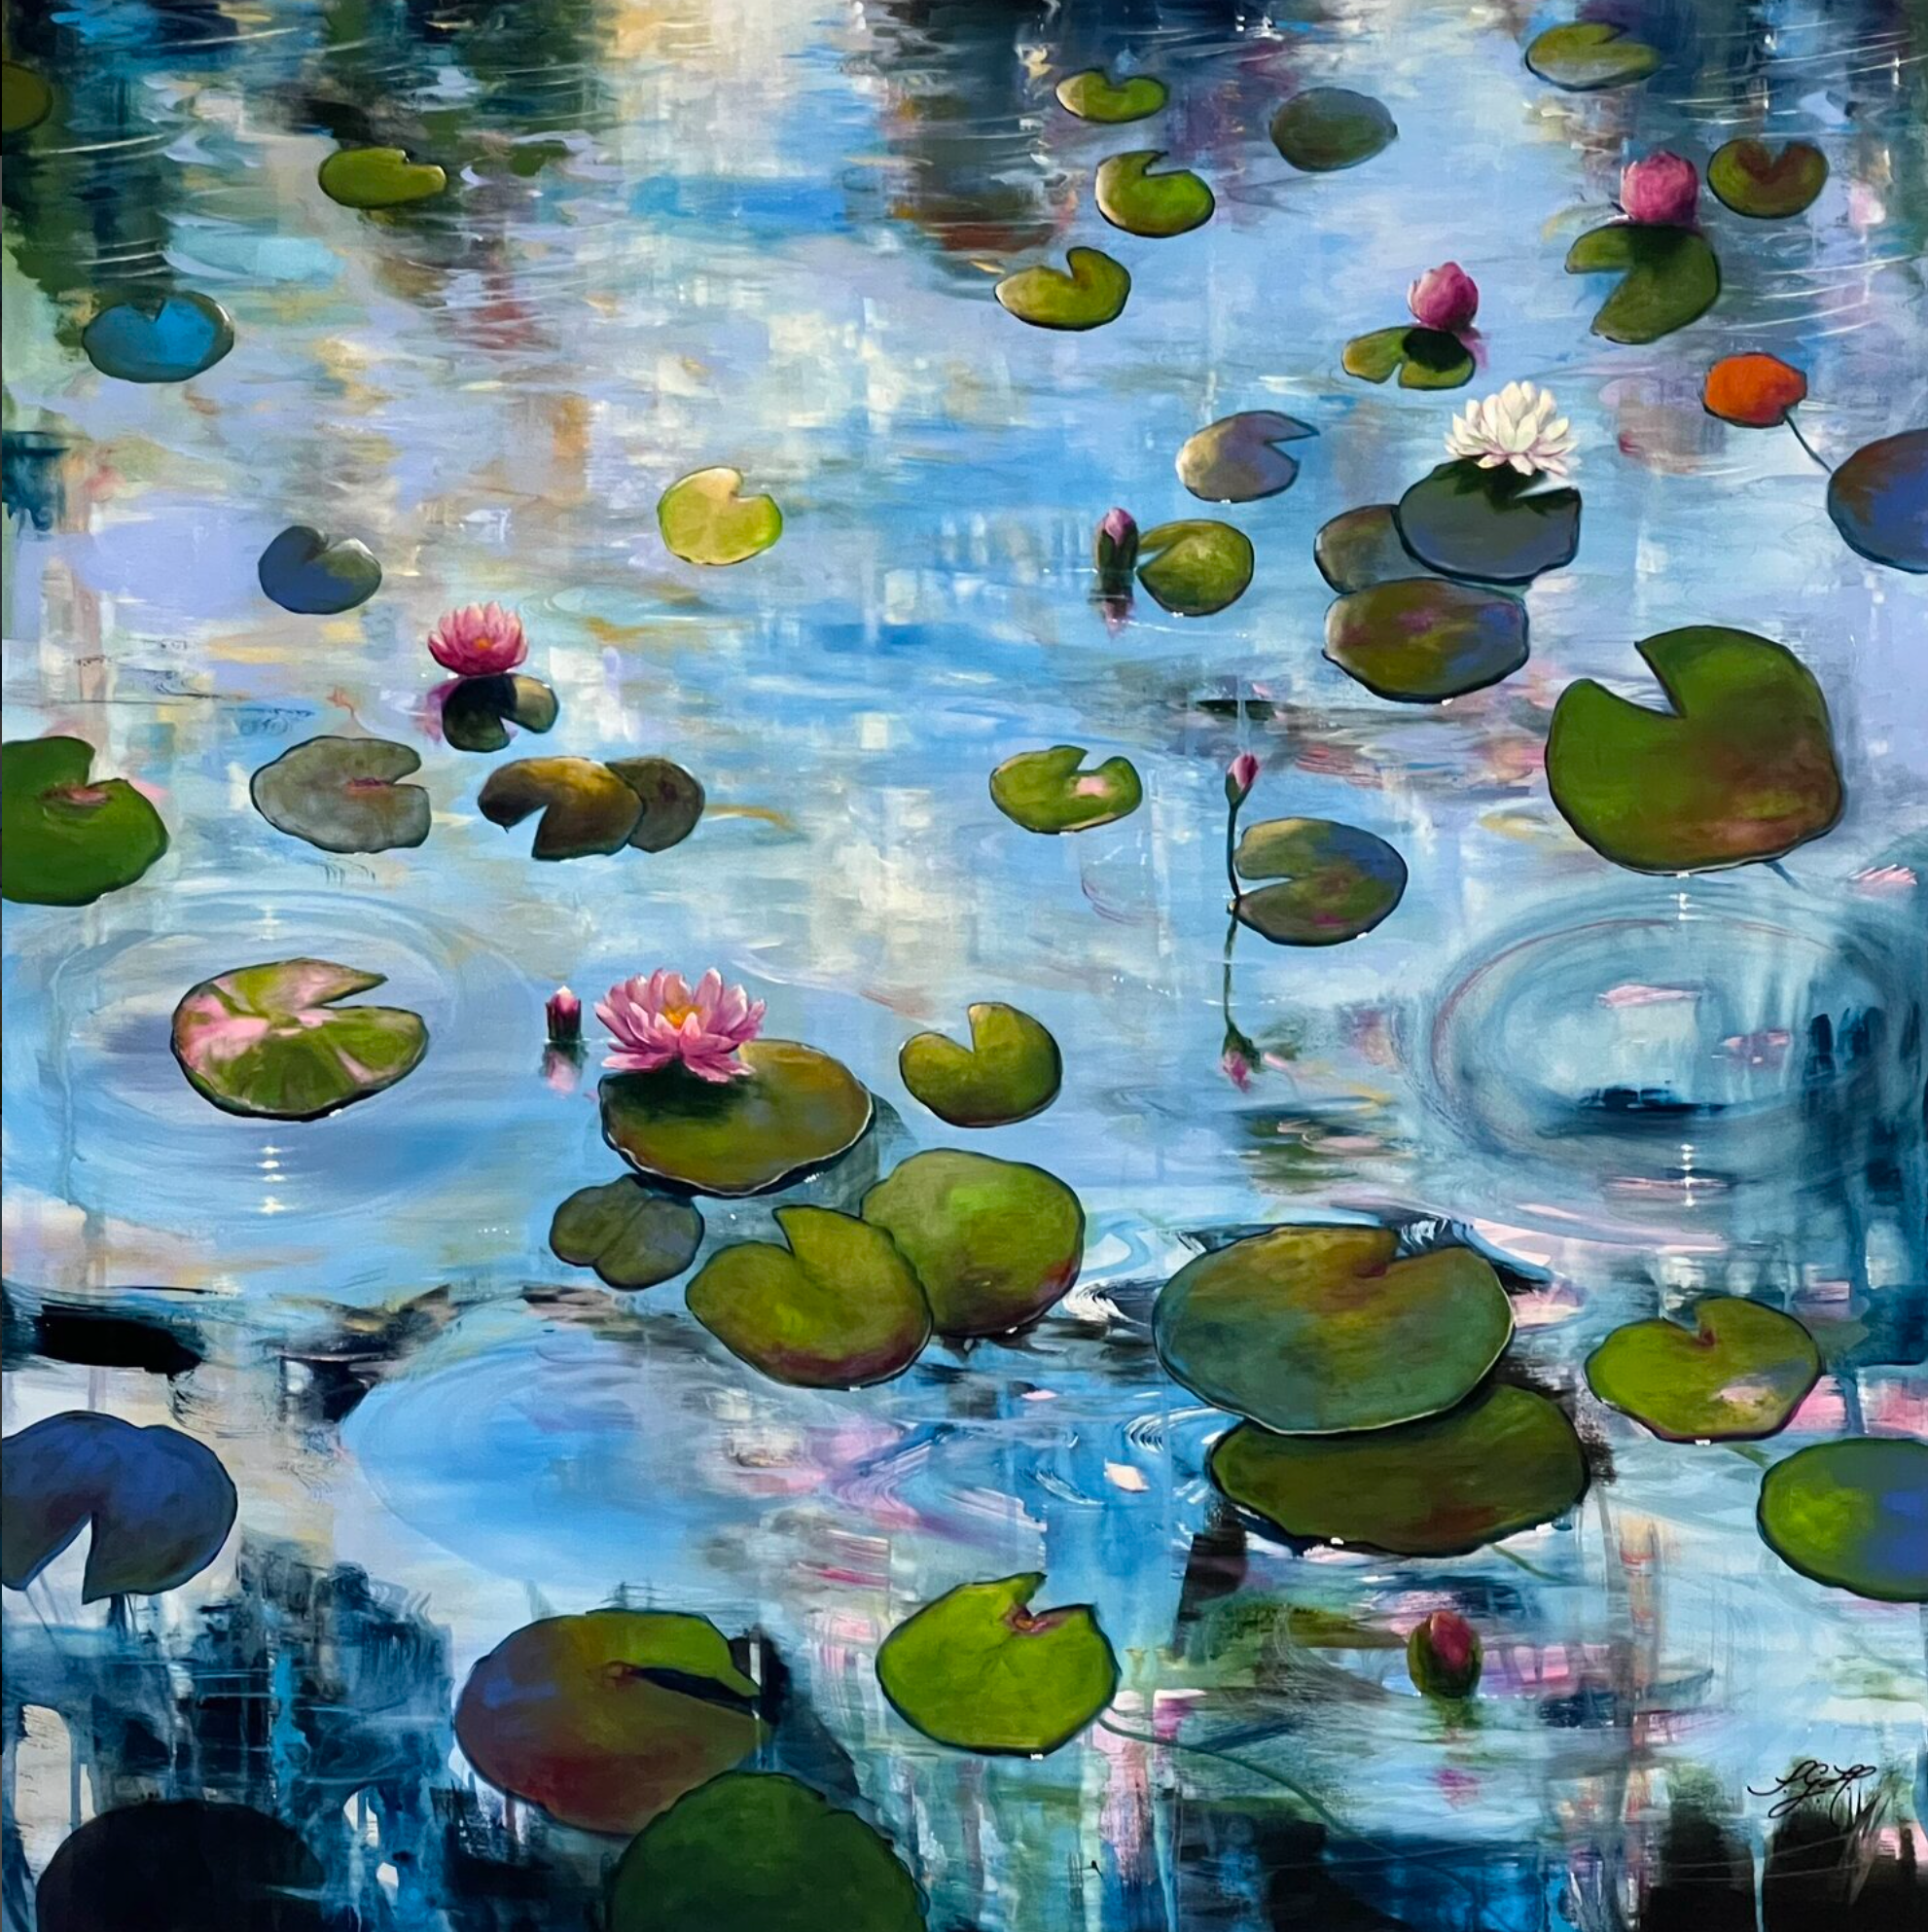 Il dipinto colorato "Always Waterlilies 4" di Sandra Gebhardt-Hoepfner mostra delle ninfee che galleggiano sull'acqua in leggero movimento sotto il sole. La luce si riflette pacificamente e danzando sulla superficie dell'acqua e in alcuni punti luccica.